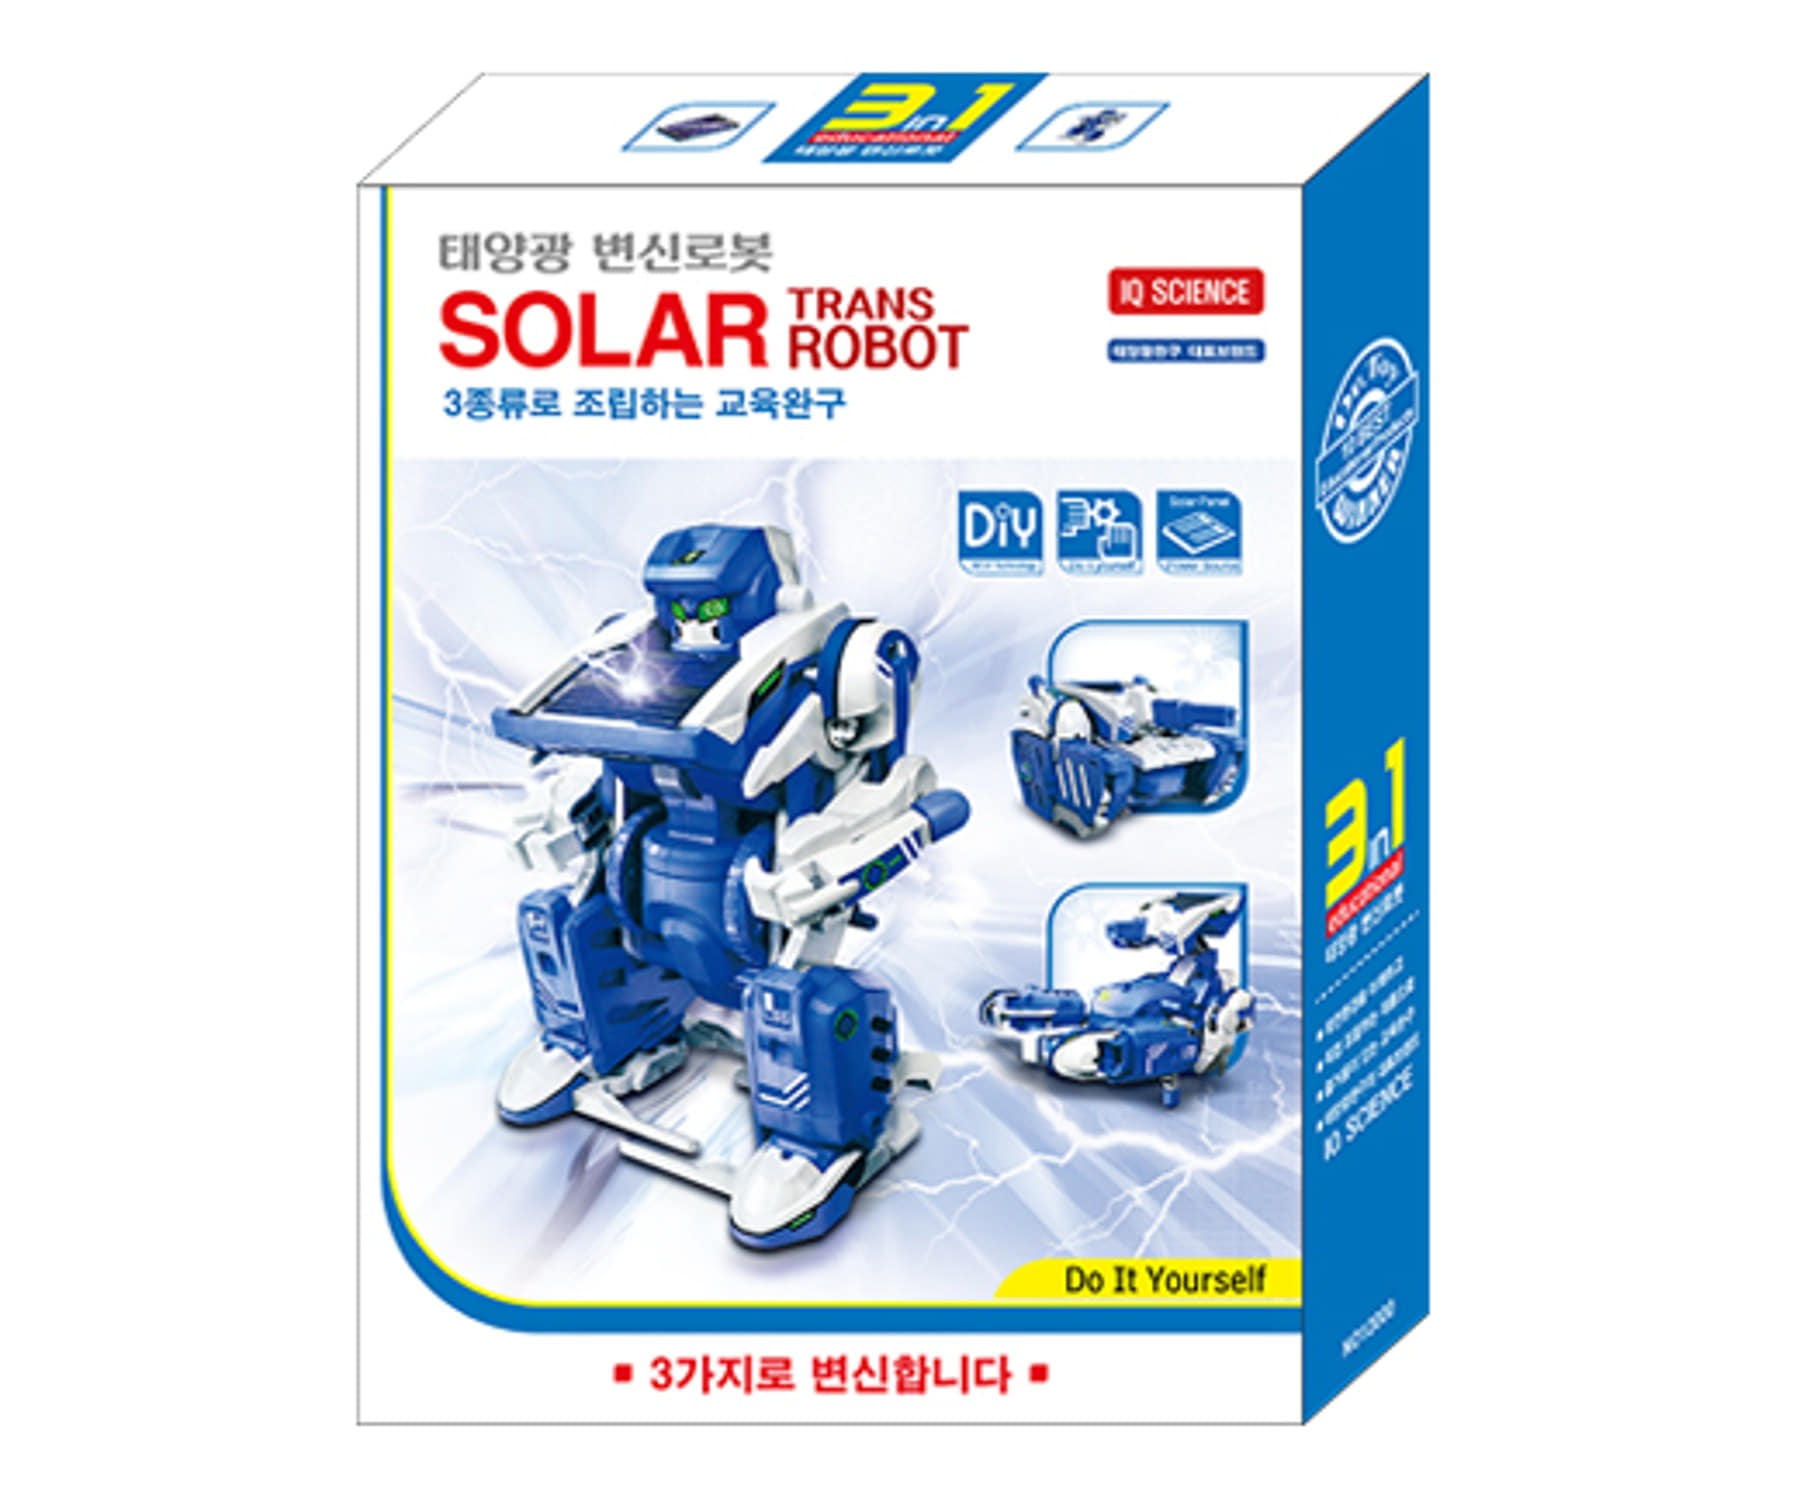 태양광 프라모델 - 3종 변신로봇